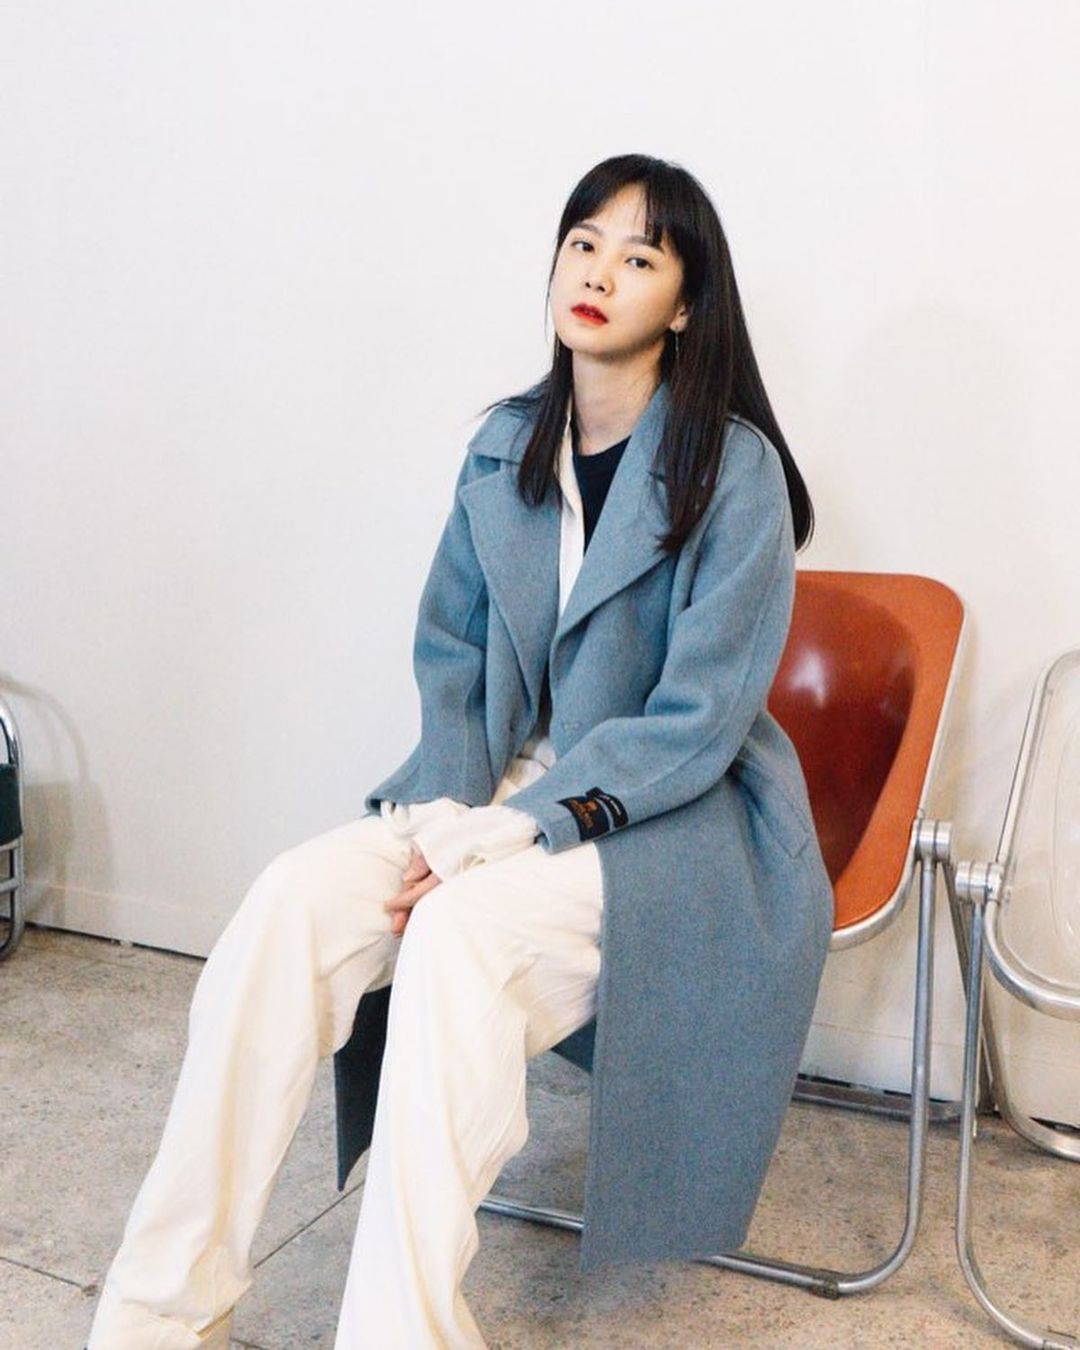 Để mặc trench coat mà không bị dừ, Yoon Seung Ah khéo léo layer cùng áo và quần xuông trắng. Nếu thời tiết lạnh hơn, có thể layer tiếp bên trong một chiếc áo len cổ lọ.